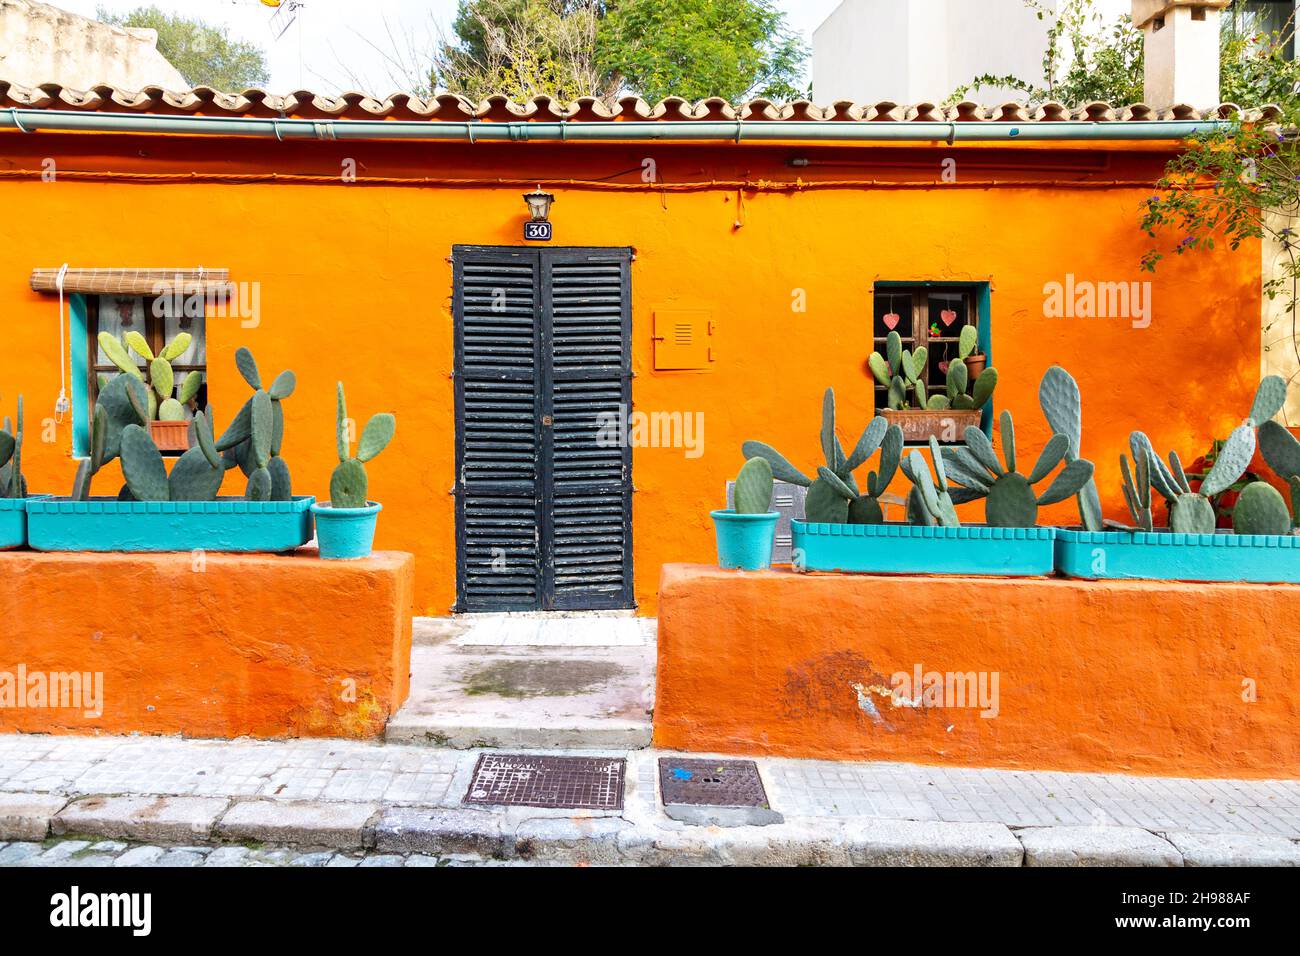 Extérieur d'une maison orange animée avec des plantes cactus en pot sur Carrer del Polvorí, El Terreno, Palma, Majorque, Espagne Banque D'Images